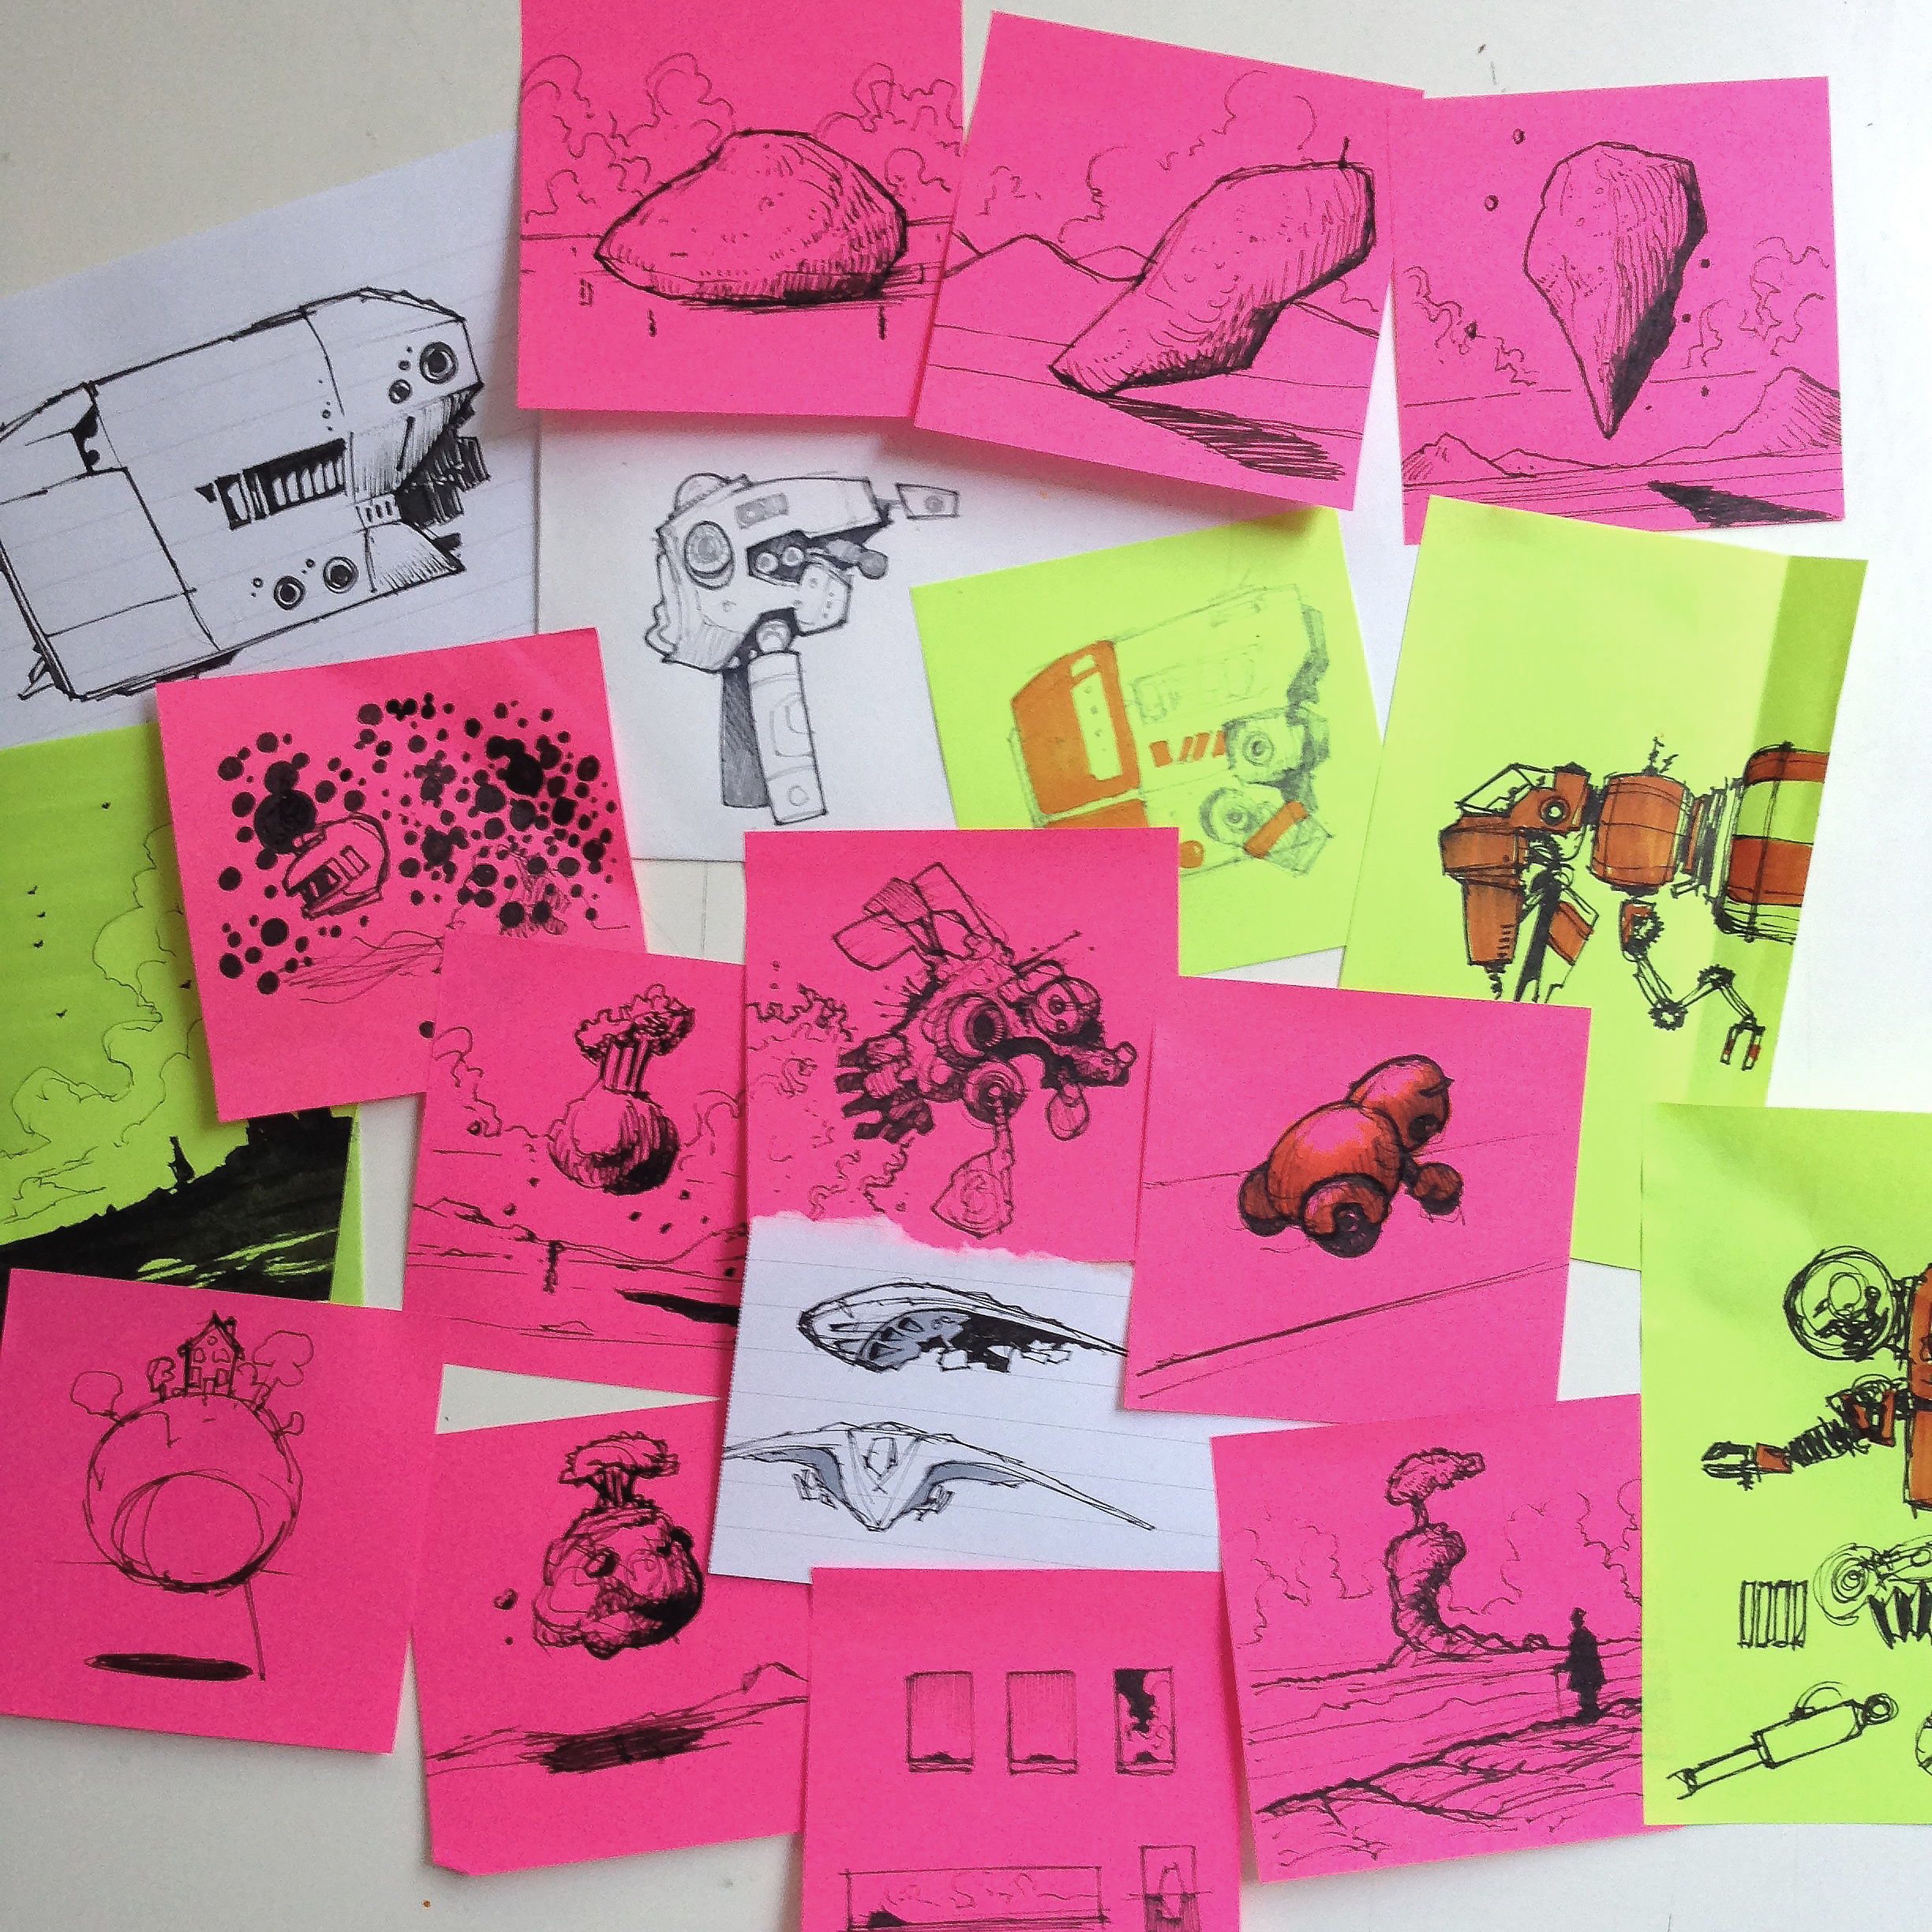 35 Free Directed Drawing Activities for Kids - WeAreTeachers